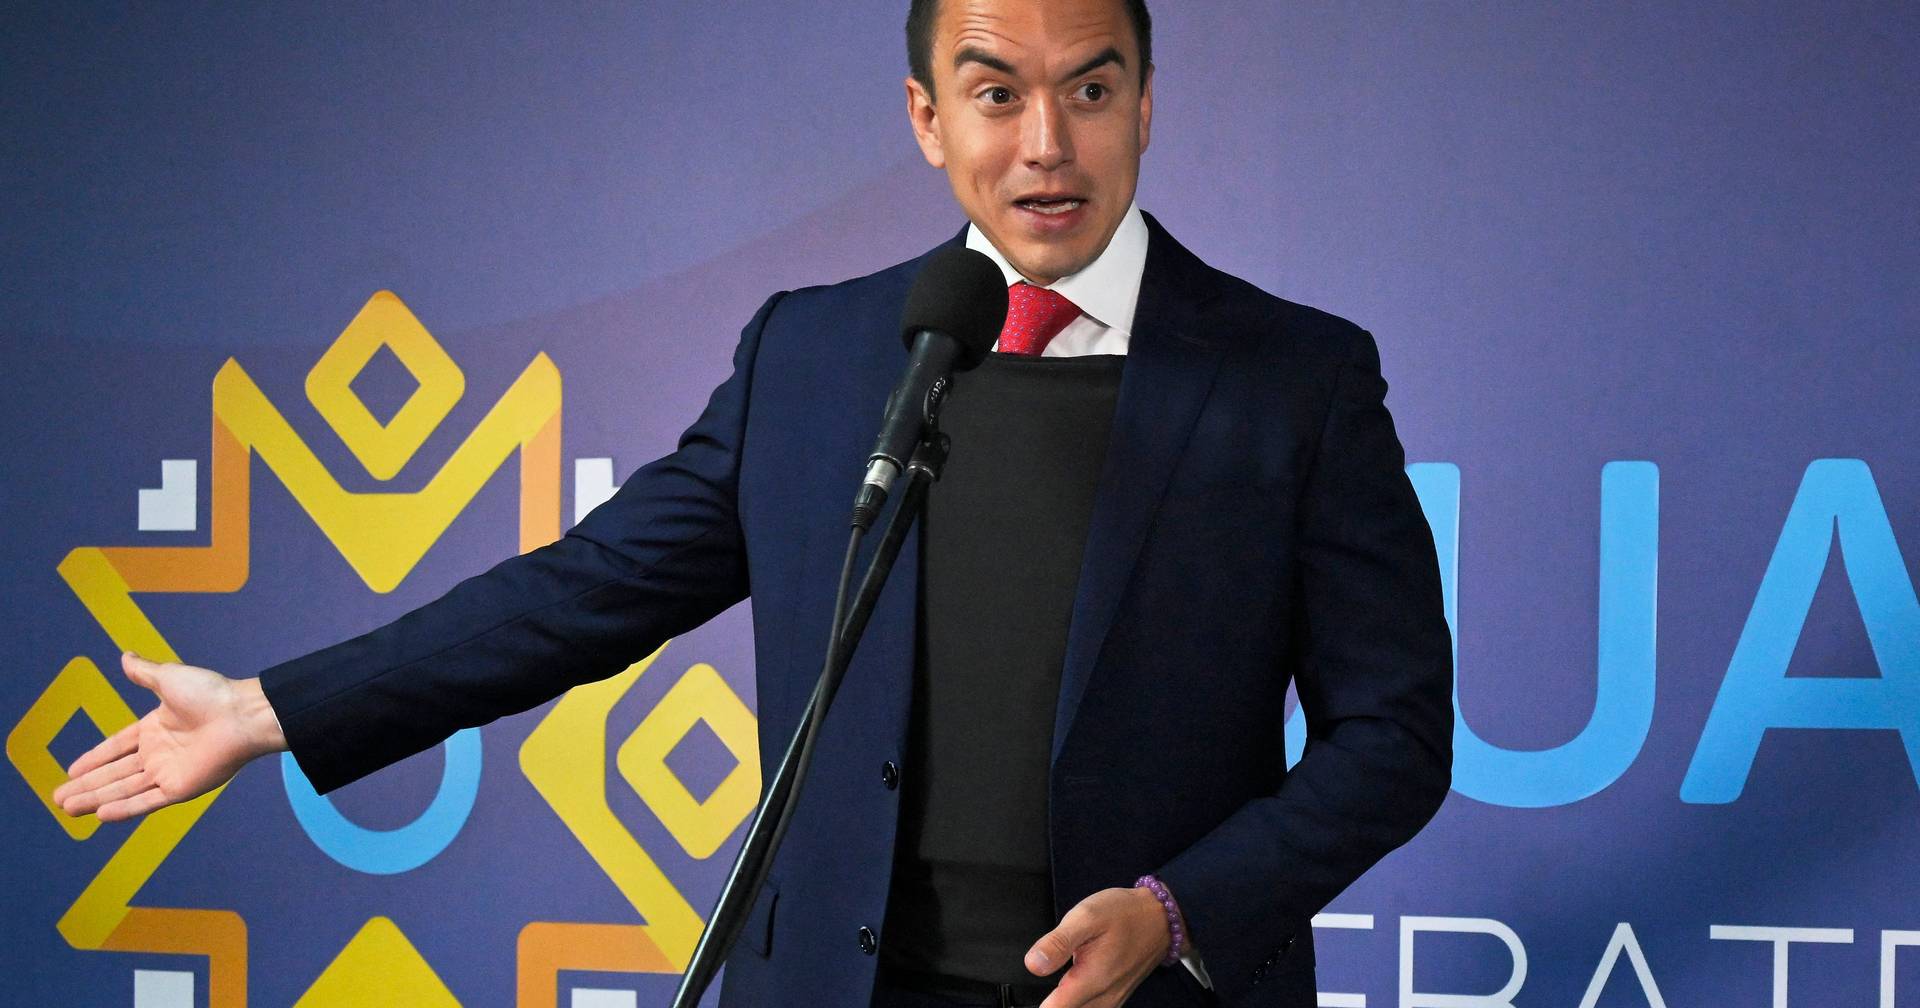 Daniel Noboa, homme d’affaires, devient le président de l’Équateur, devenant ainsi le plus jeune de tous les temps